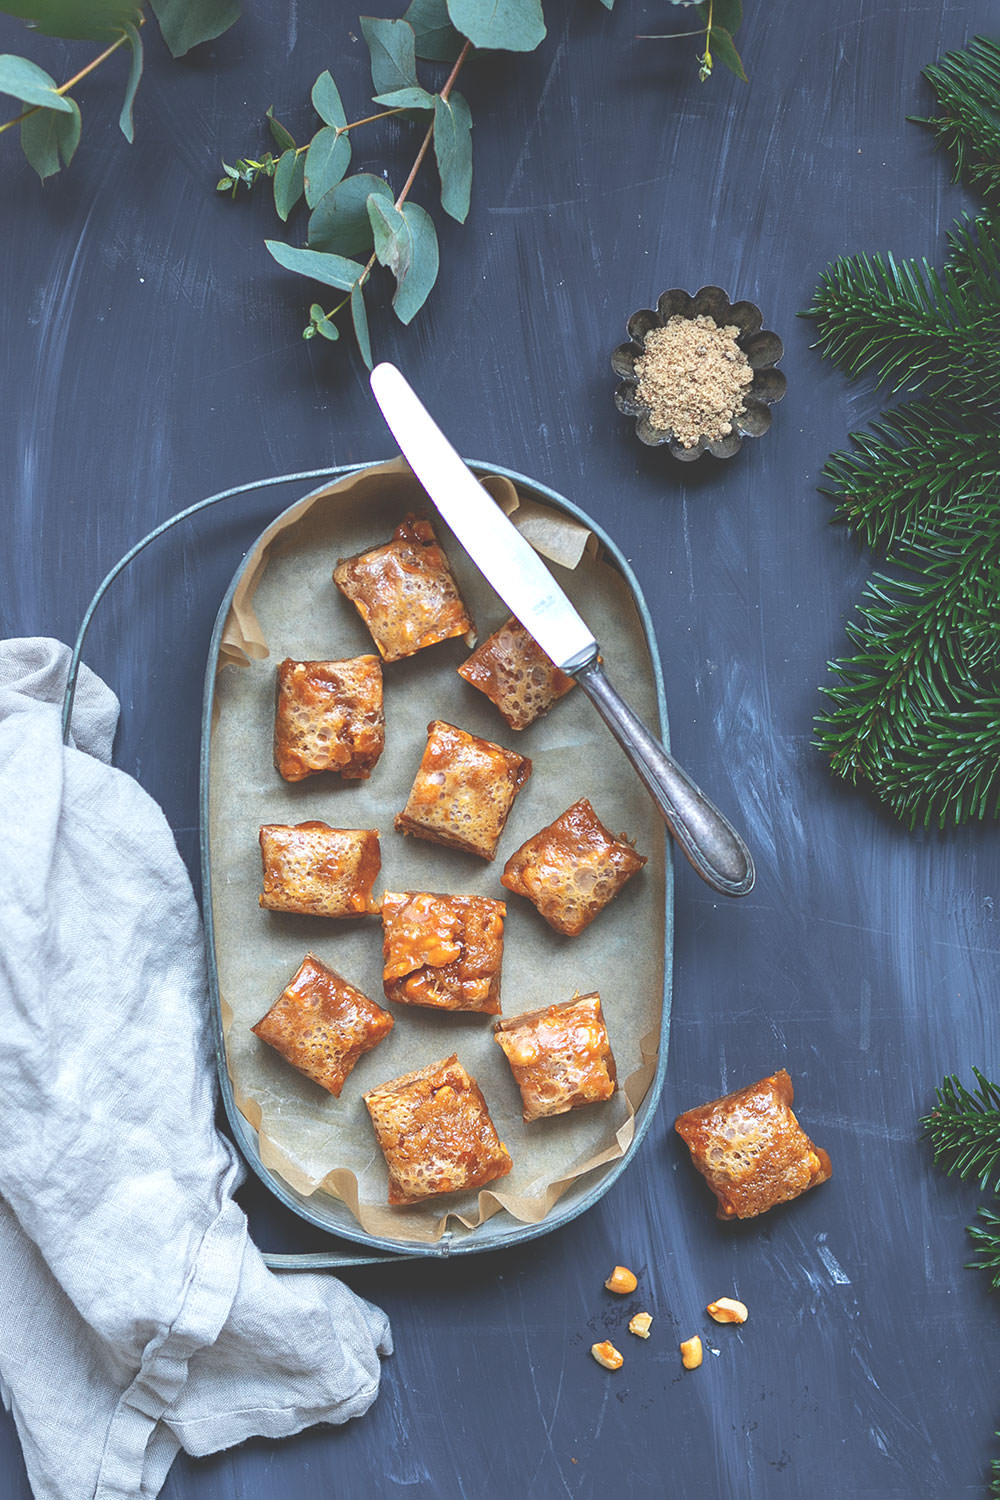 Rezept für Lebkuchen-Karamell-Würfel mit gerösteten Erdnüssen nach Donna Hay | Weihnachtliches Backen für den Plätzchenteller | moeyskitchen.com #weihnachtsplätzchen #lebkuchen #karamell #foodblog #rezepte